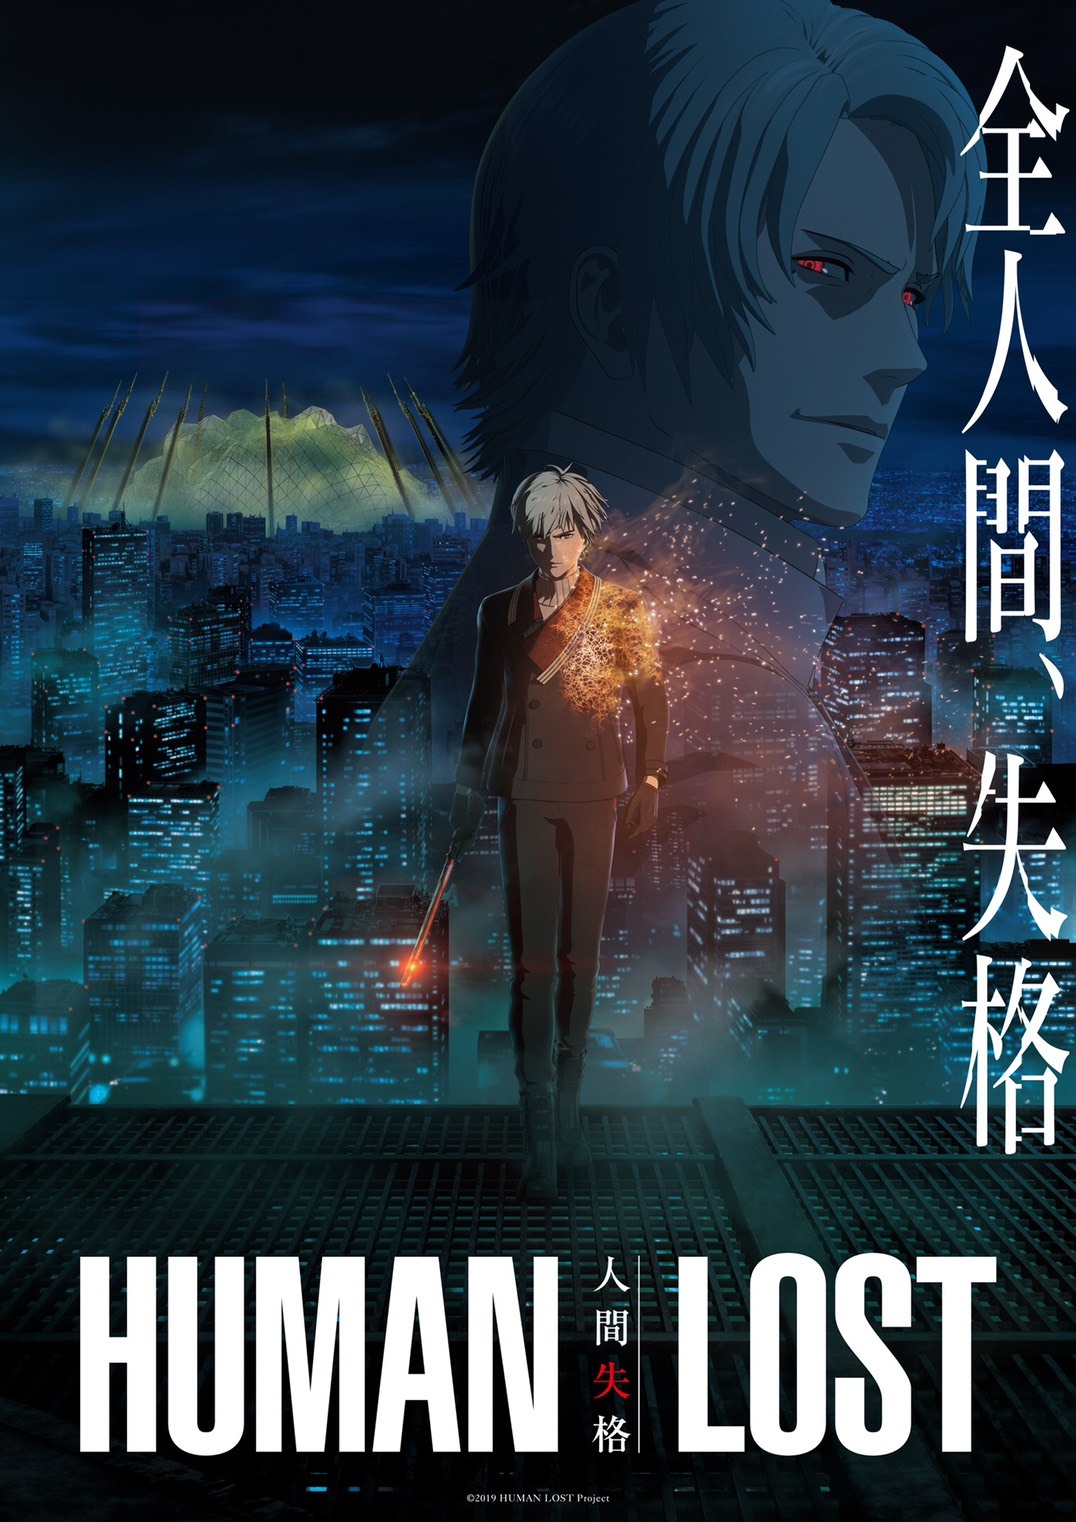 劇場アニメーション『HUMAN LOST 人間失格』キービジュアル (C)2019 HUMAN LOST Project